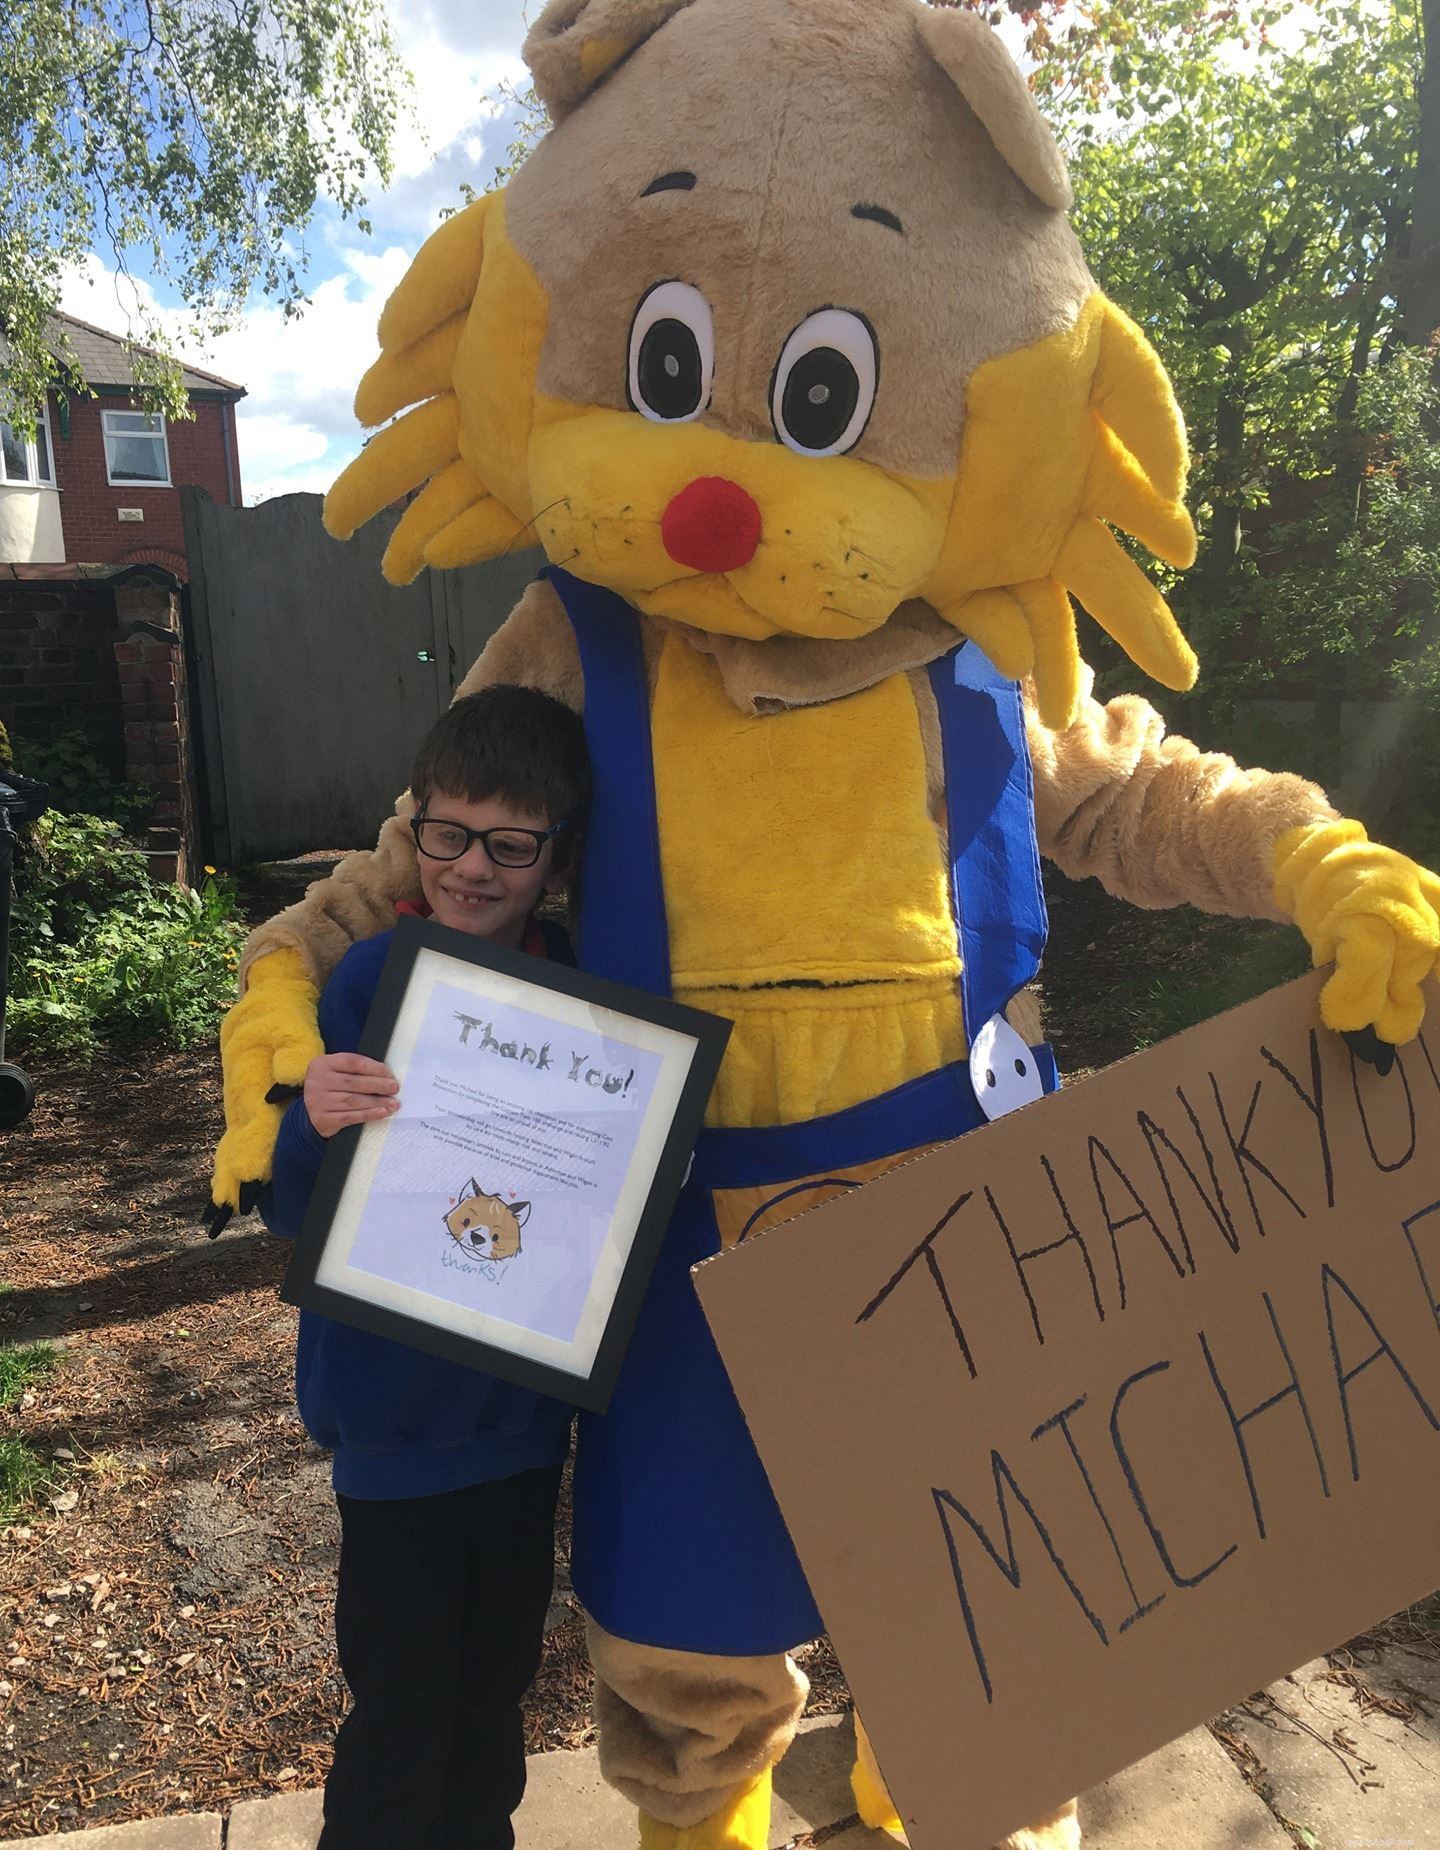 11-årige Michael Hart från Wigan underhöll både katter och Facebook-följare för att samla in £300 till en välgörenhetsorganisation som ligger honom varmt om hjärtat